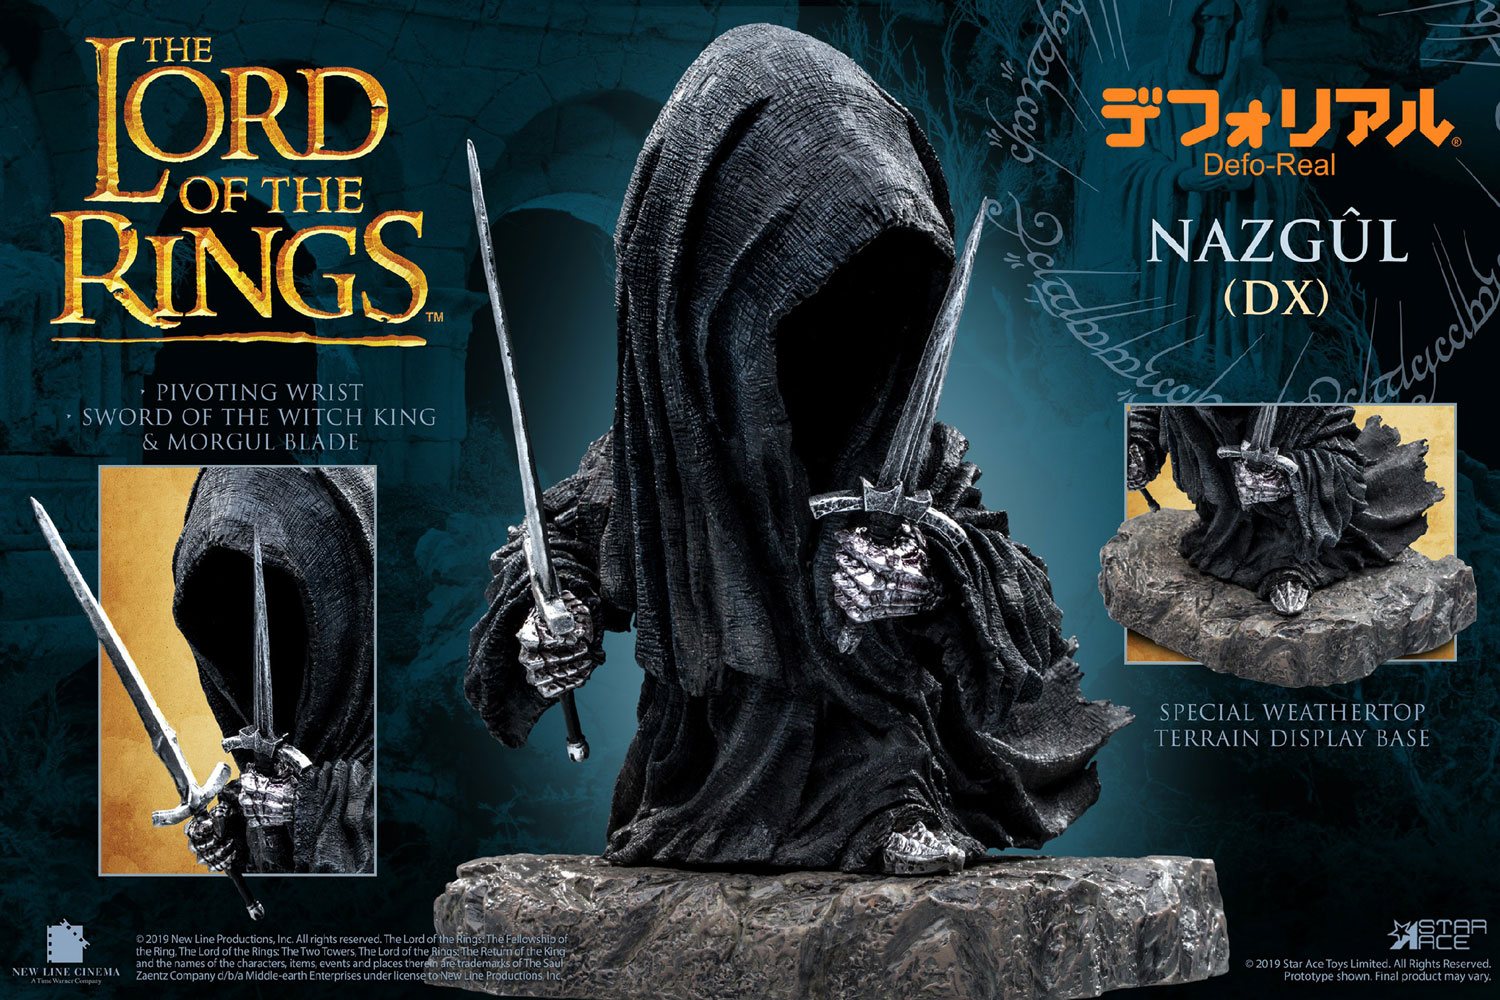 Le Seigneur des Anneaux figurine Defo-Real Series Nazgul Deluxe Version 15 cm